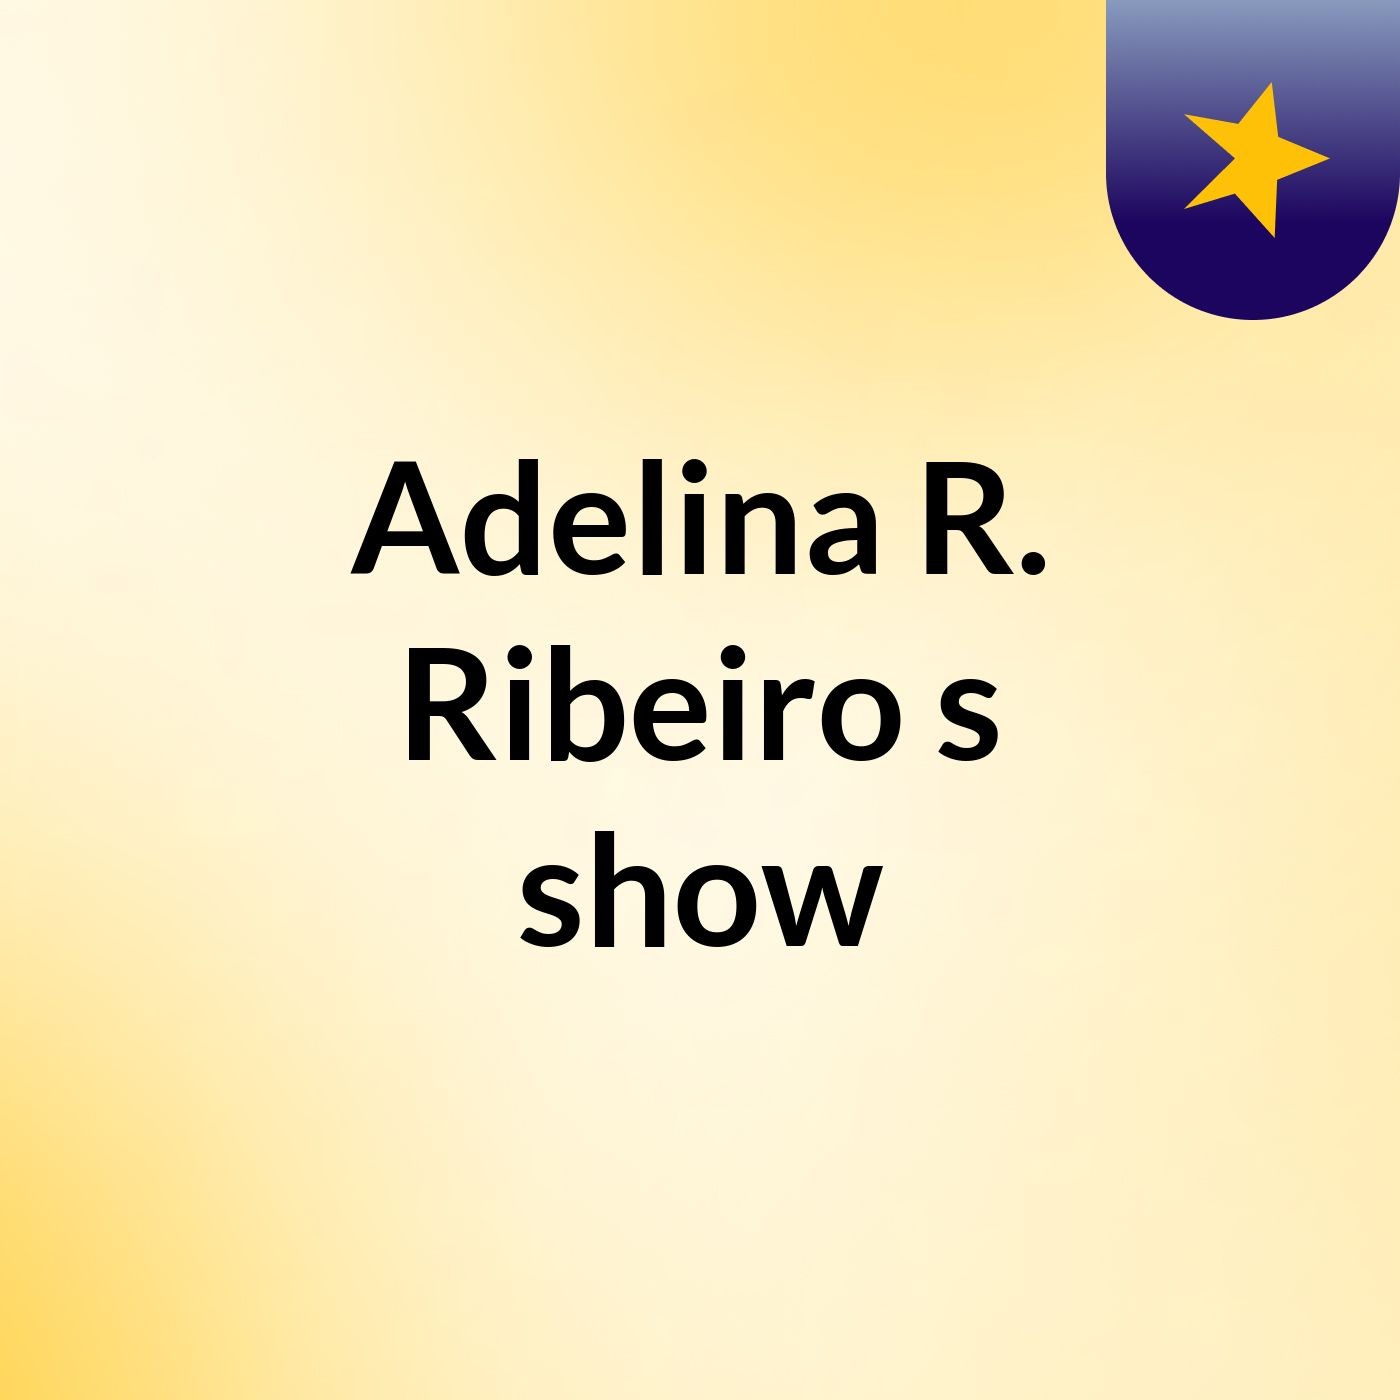 Adelina R. Ribeiro's show